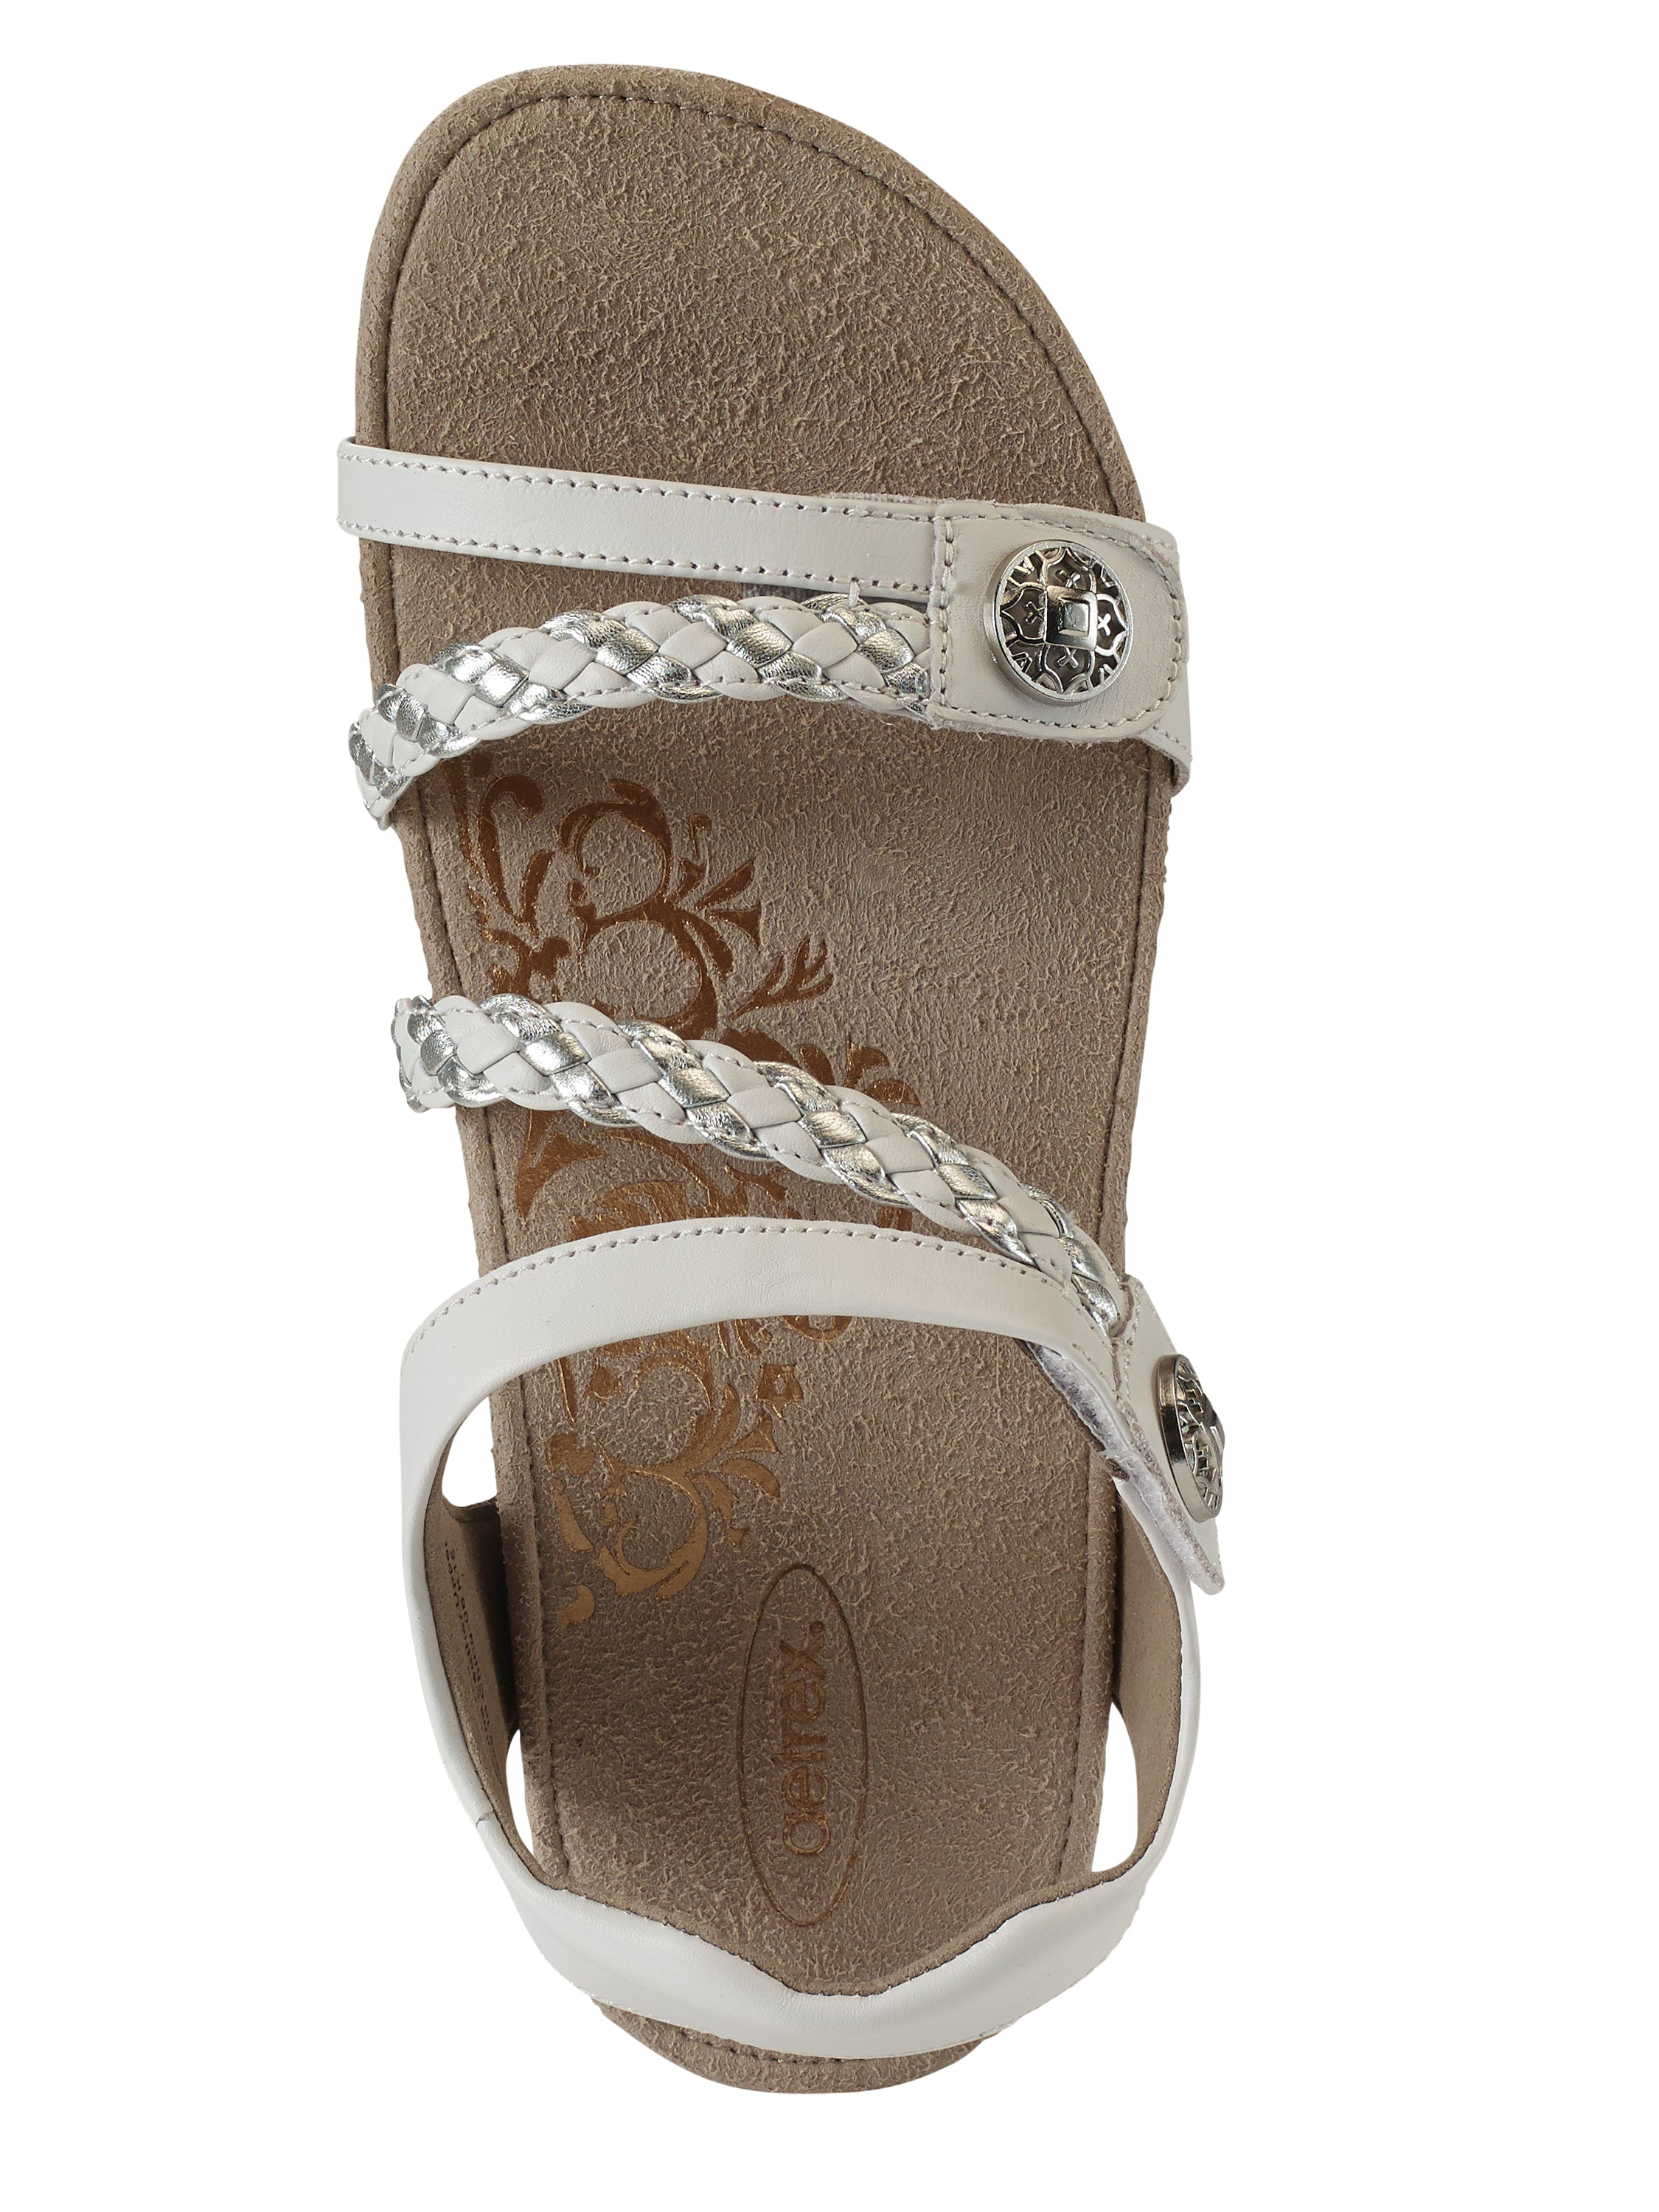 Aetrex Women's Jillian Braided Quarter Strap Sandals